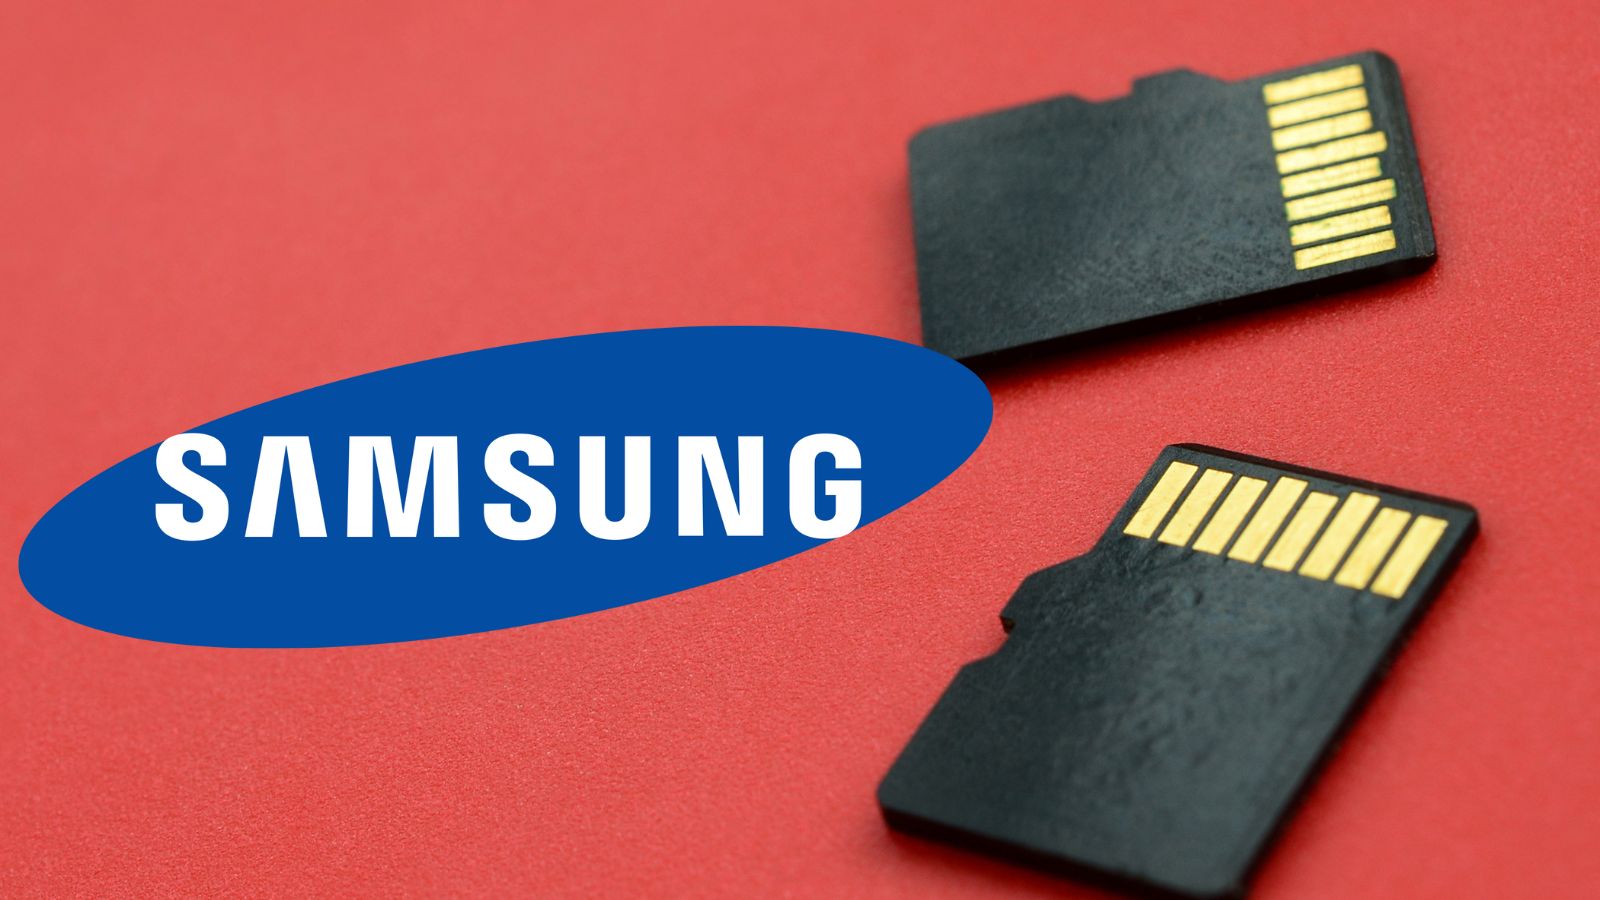 In arrivo le nuove schede microSD di Samsung 